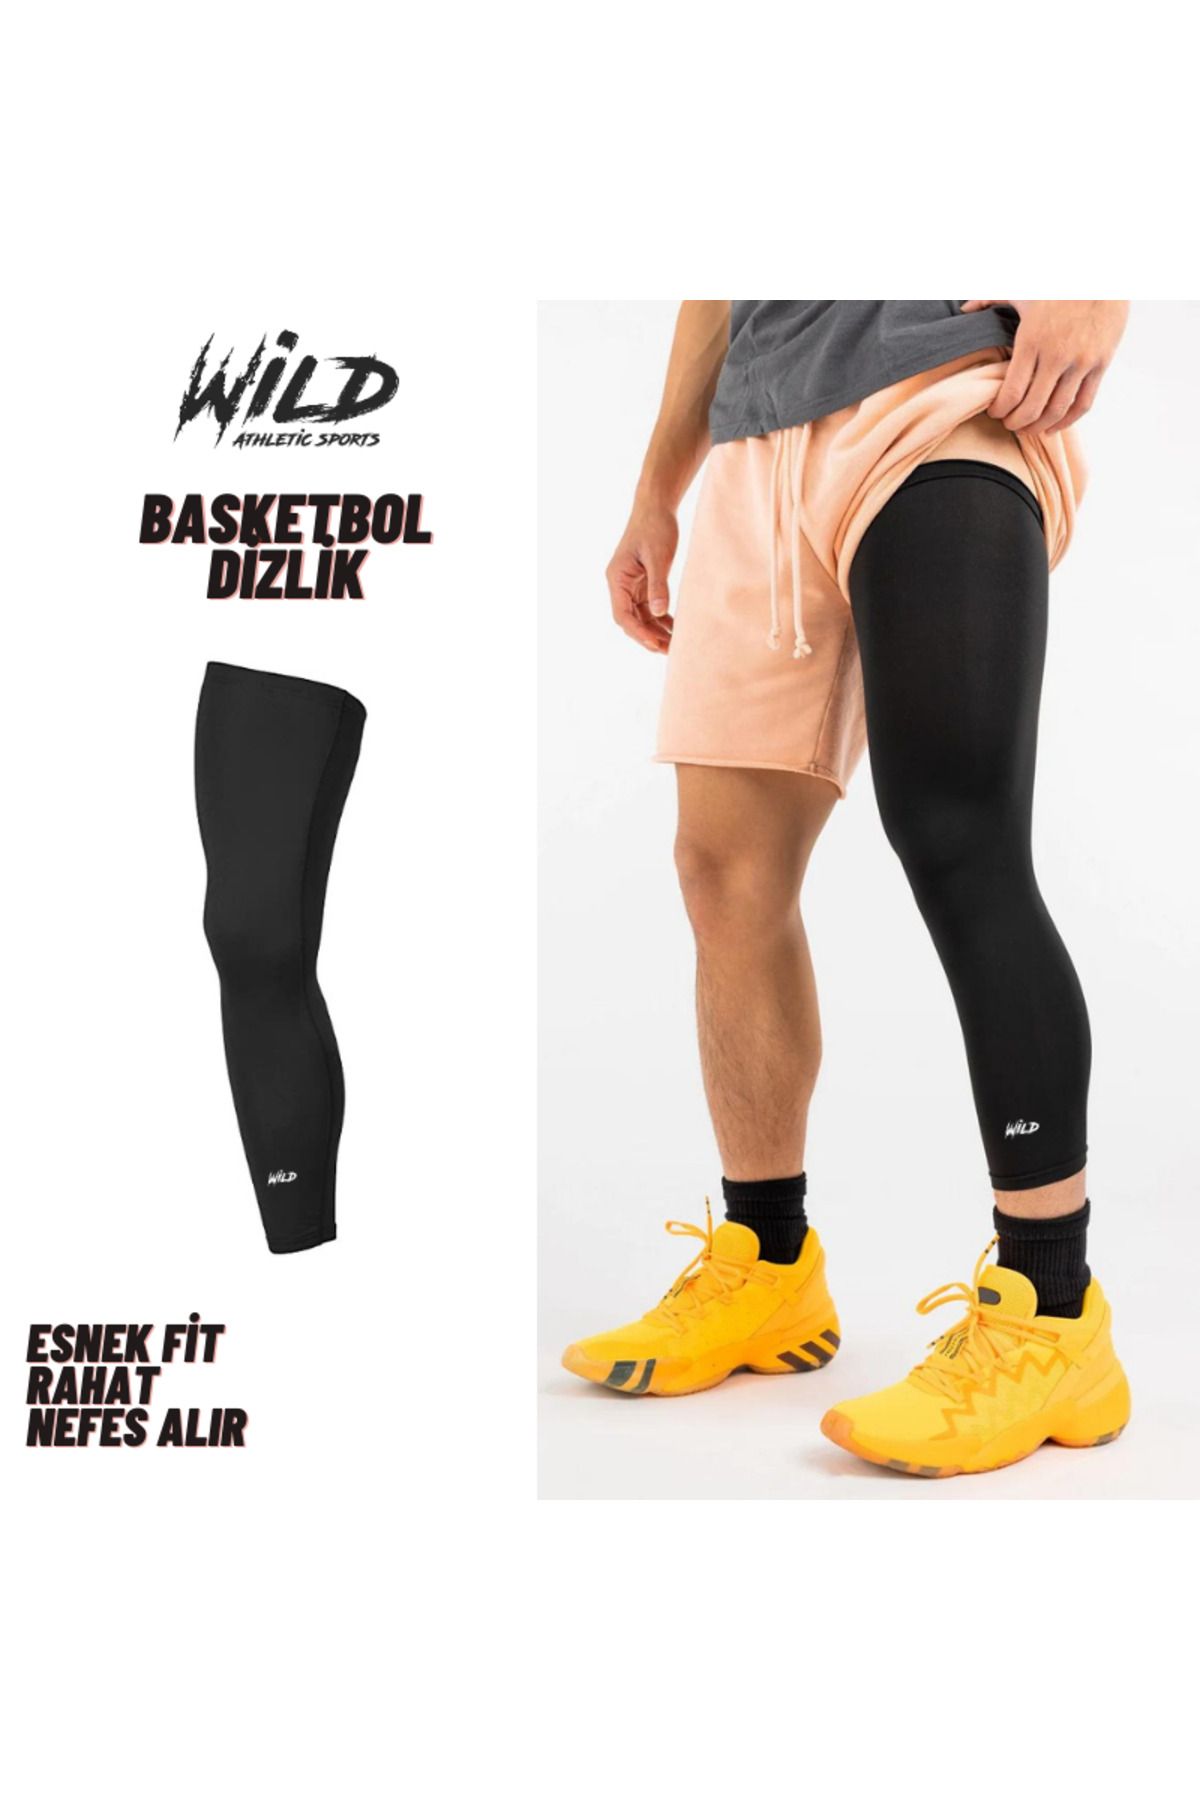 Wild Athletic Basketbol Korumasız Spor Dizlik